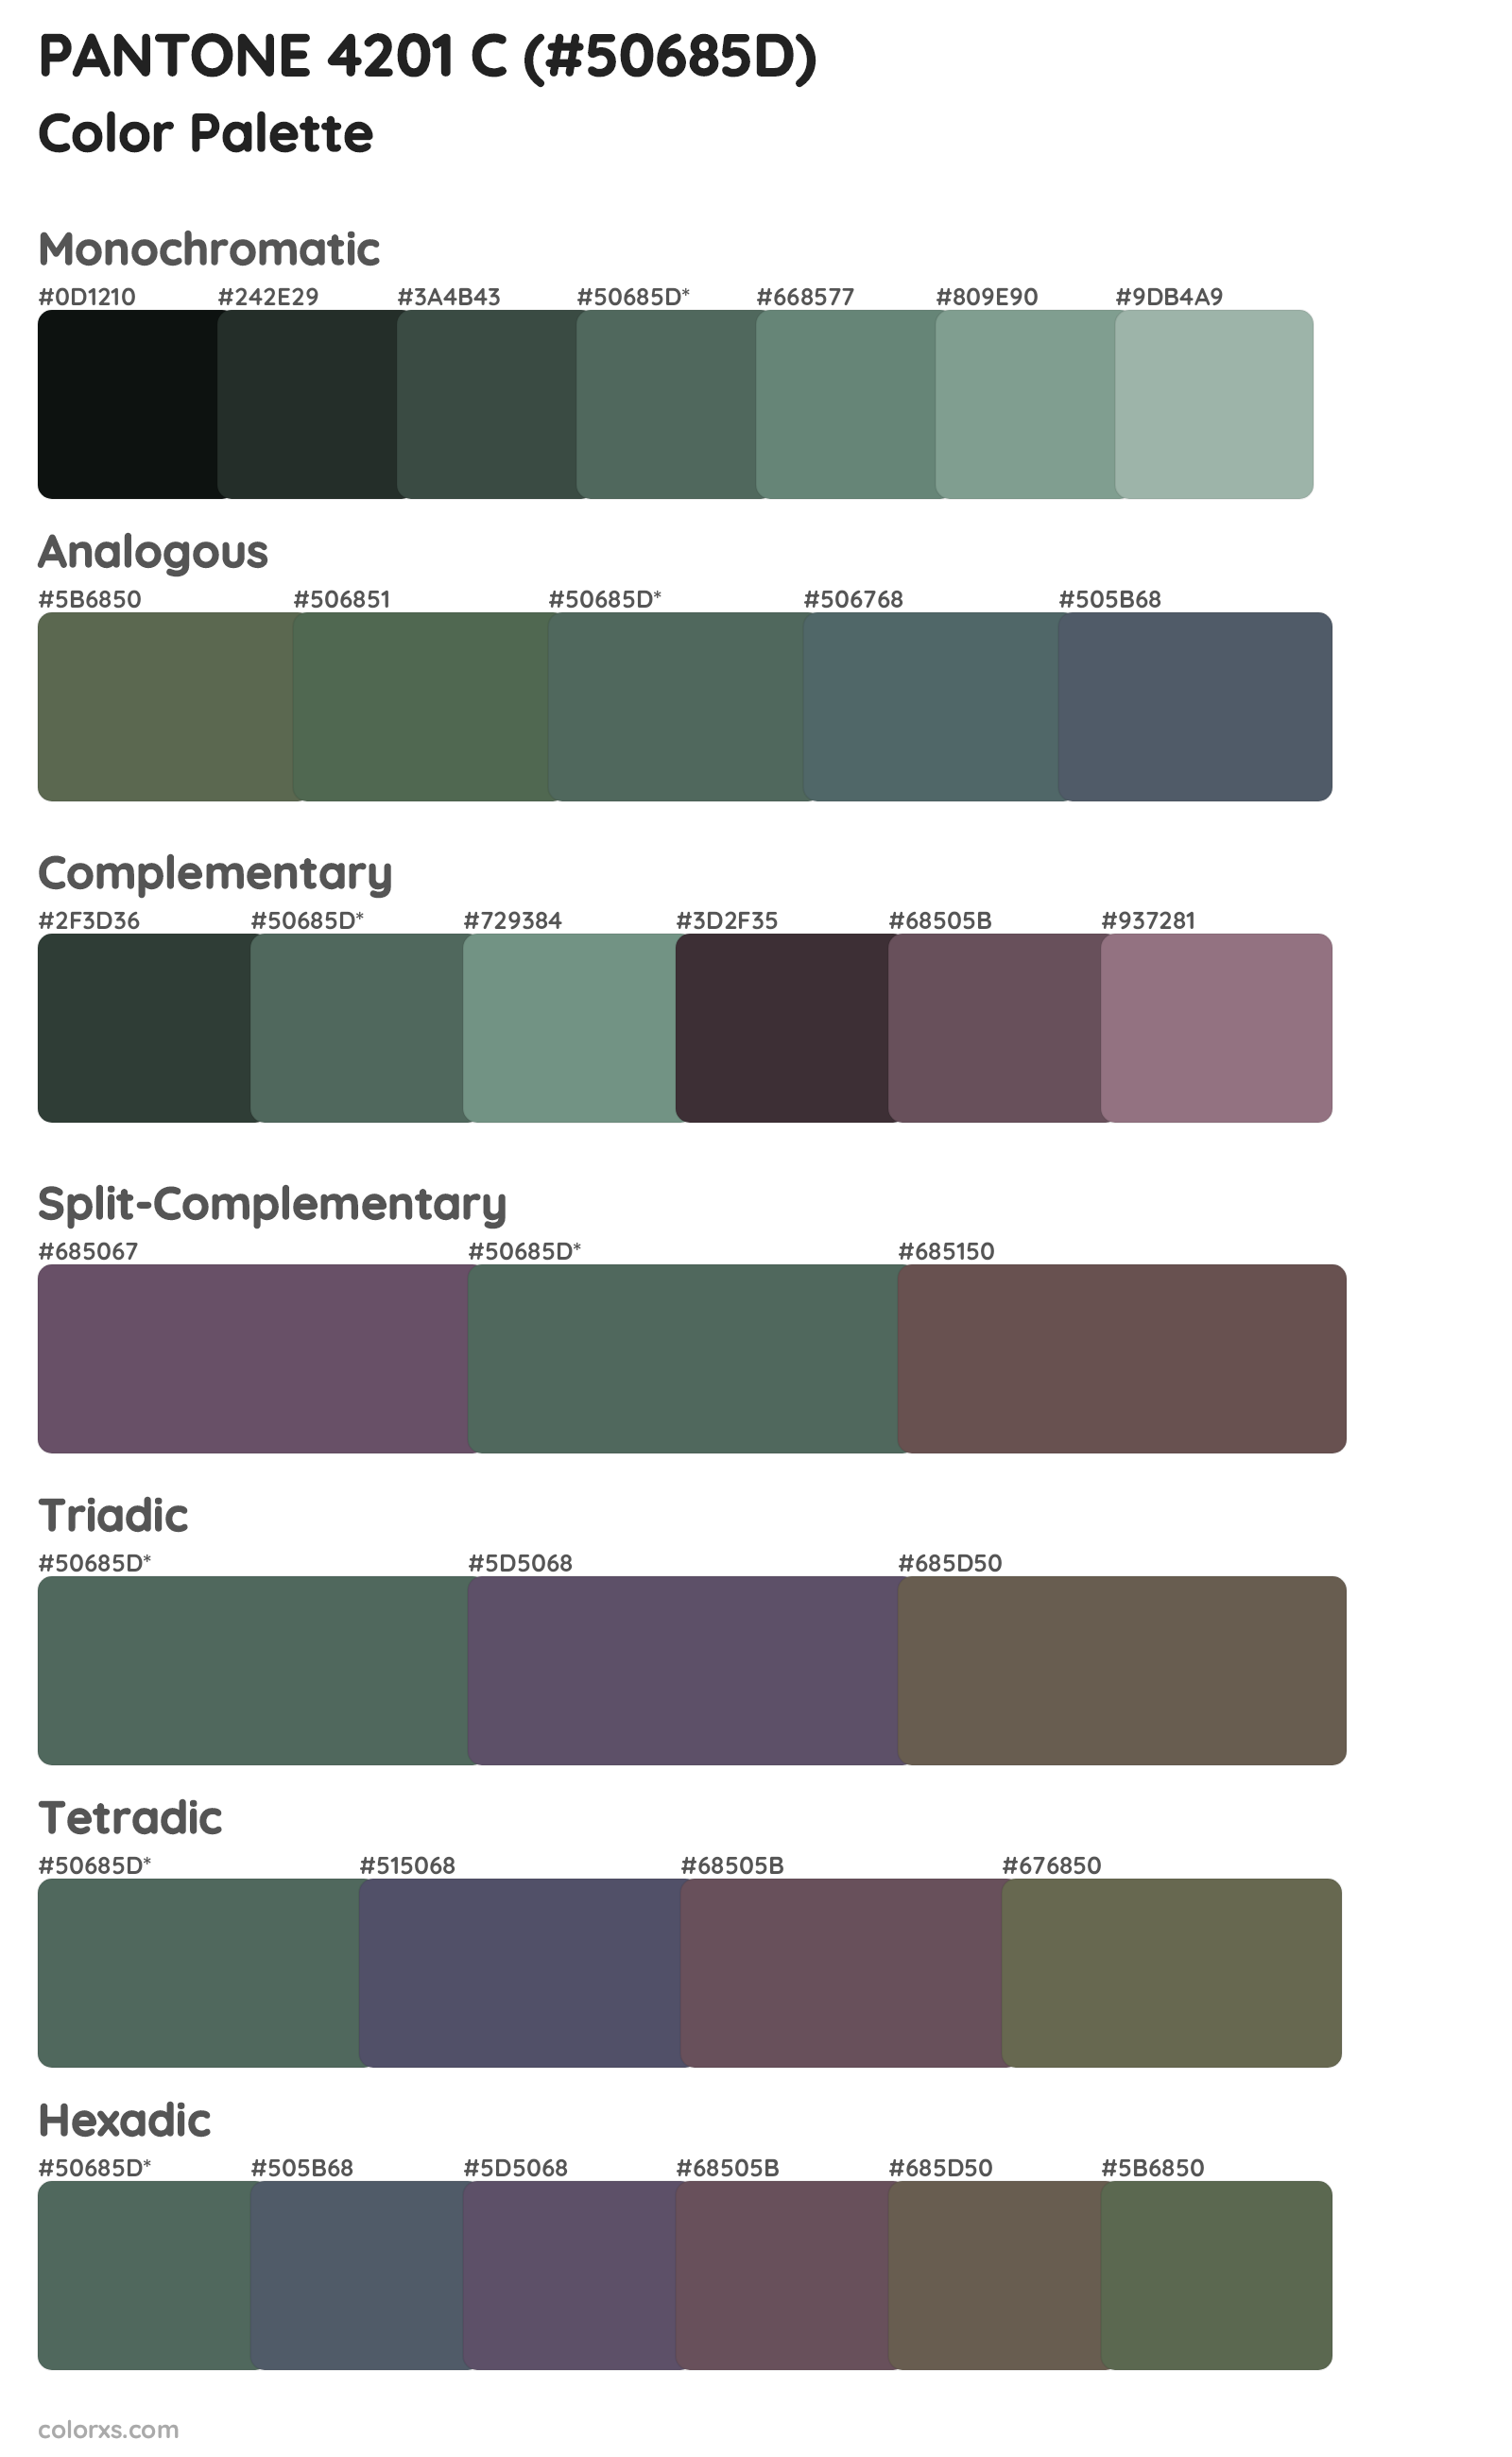 PANTONE 4201 C Color Scheme Palettes